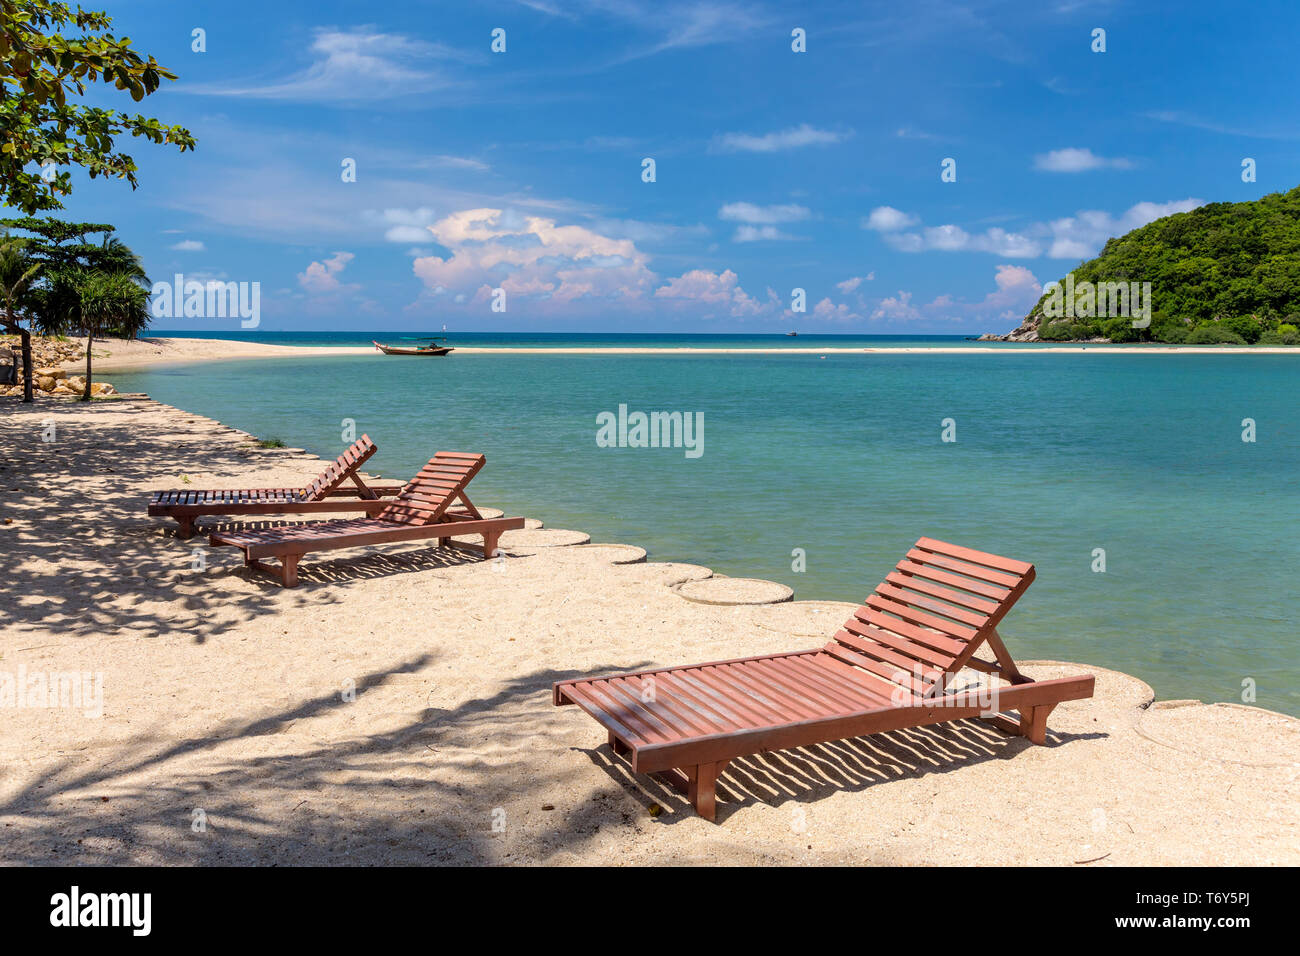 Sunbeds on a tropical beach, Thailand Stock Photo